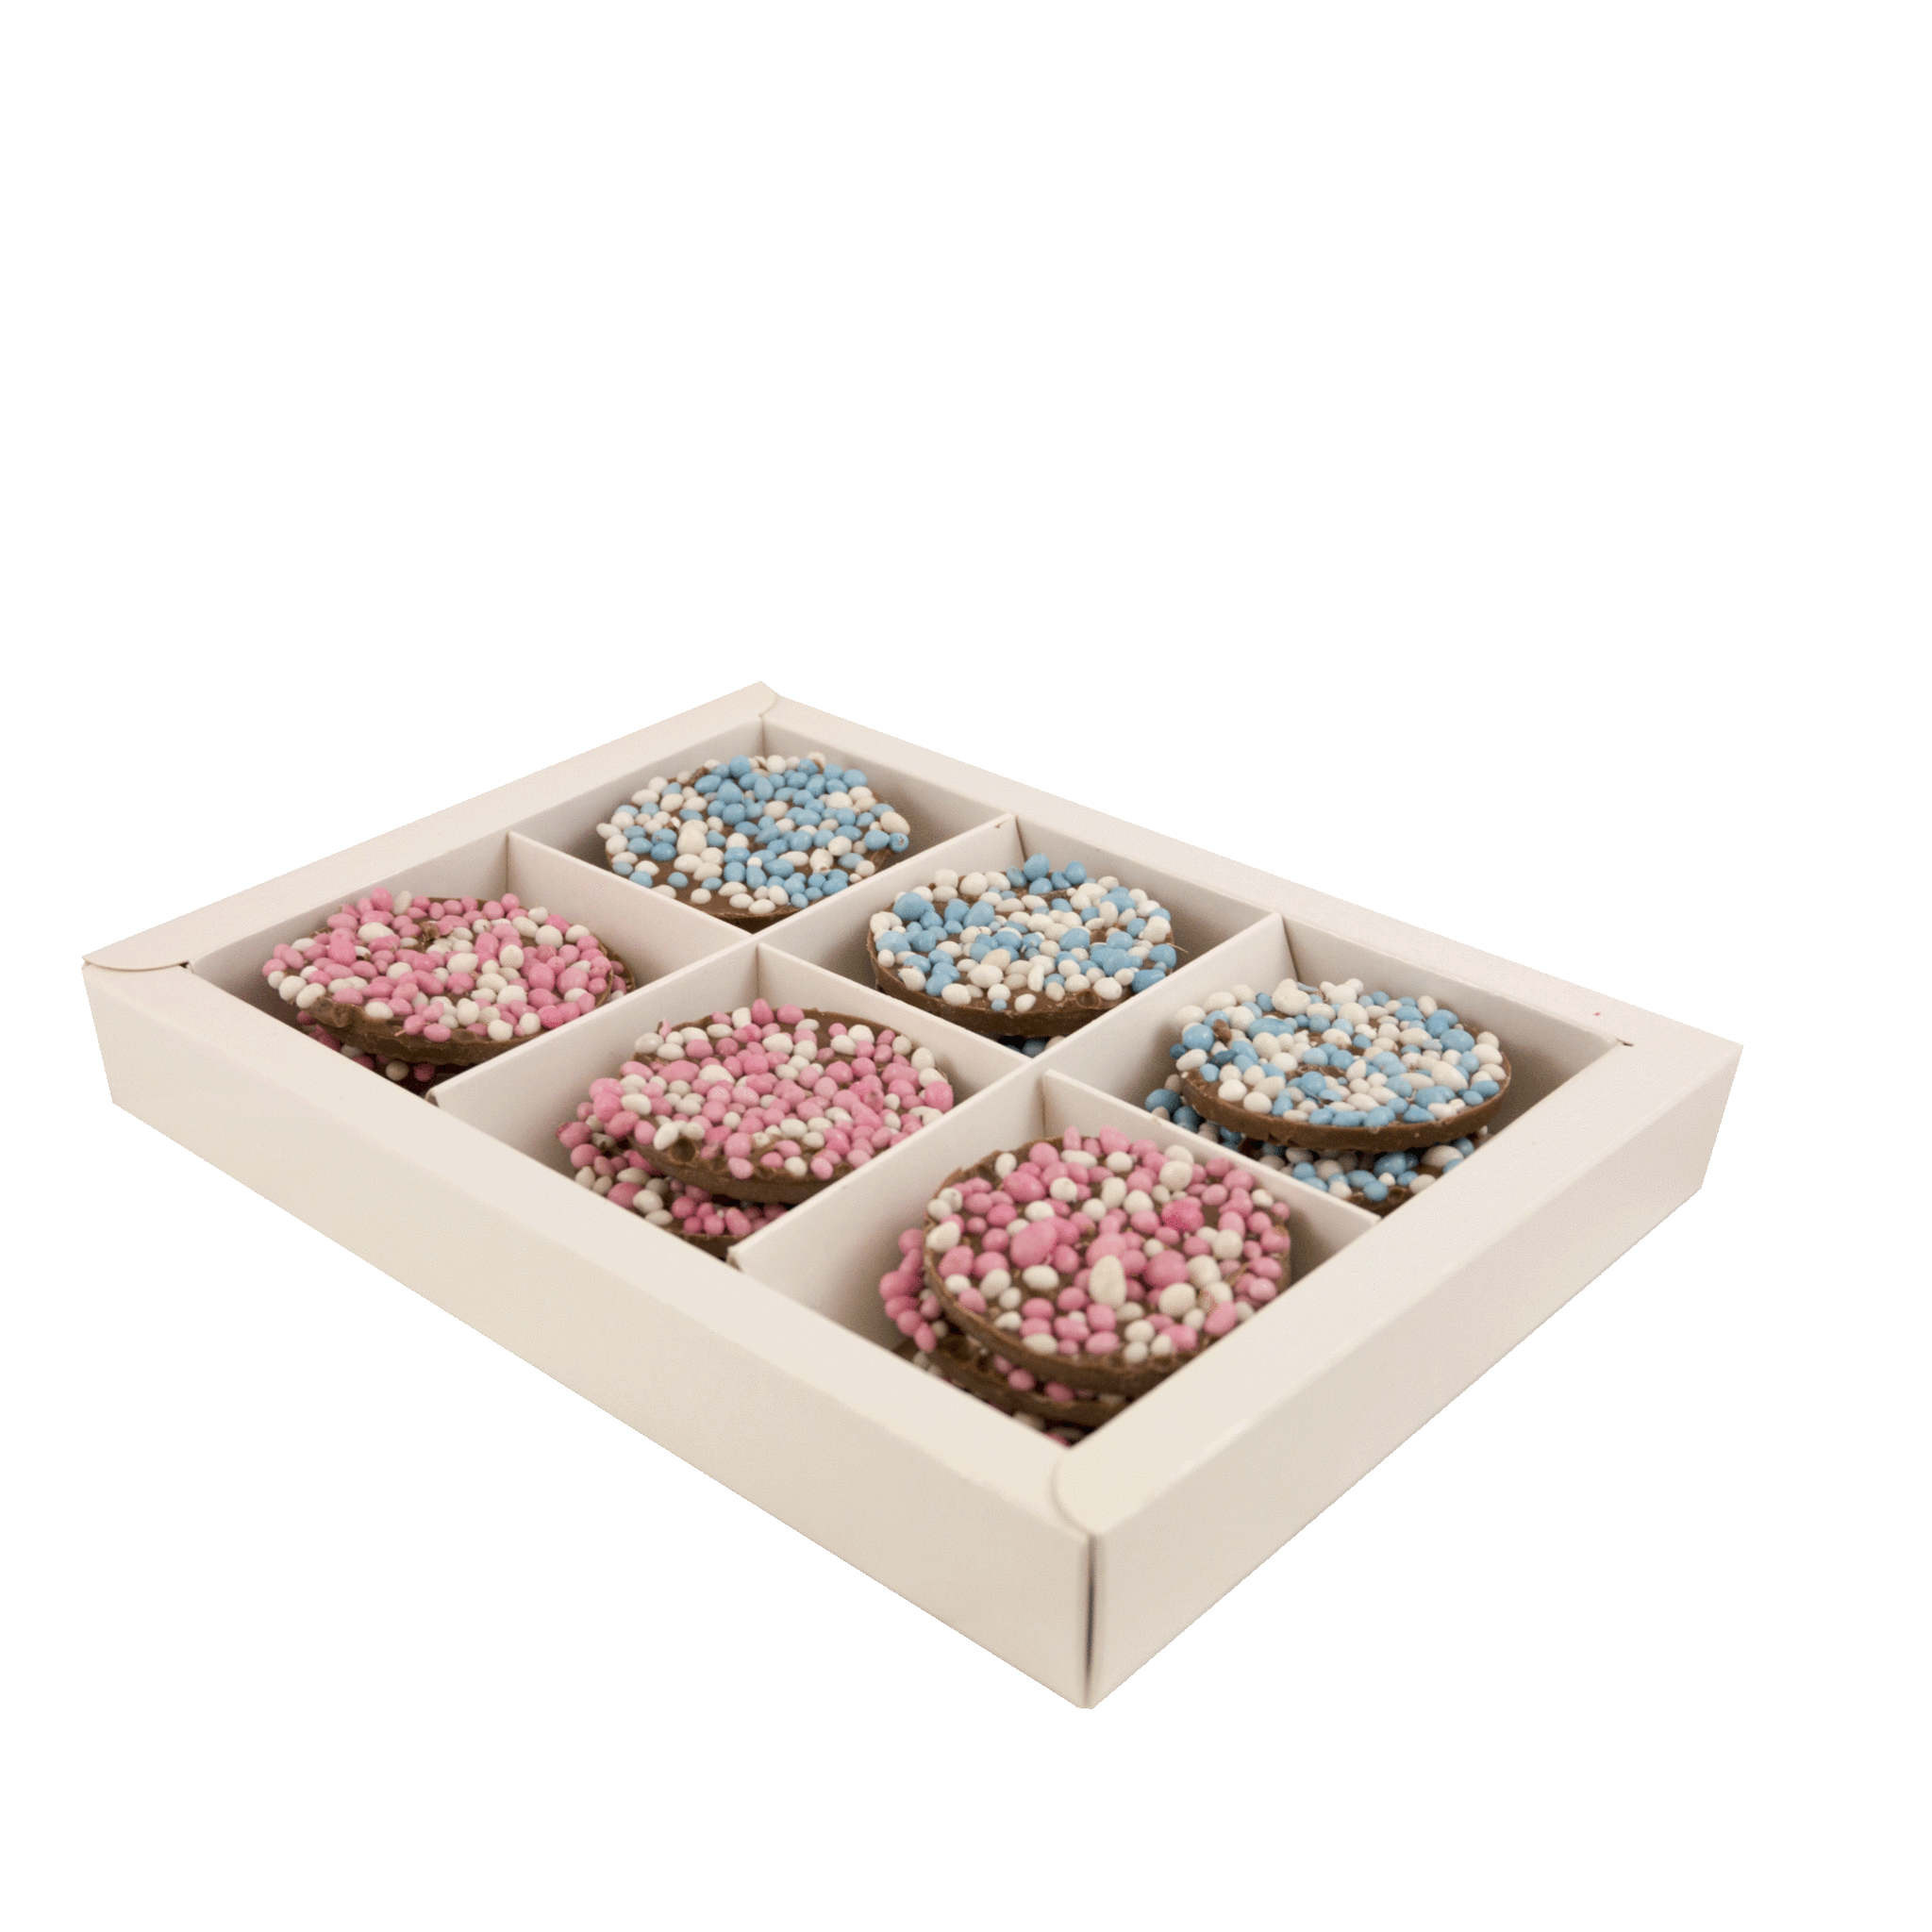 De vreemdeling geest Kijkgat Chocolade flikken 18 st met roze & blauwe geboorte muisjes 225 gr -  ChocoladeChef